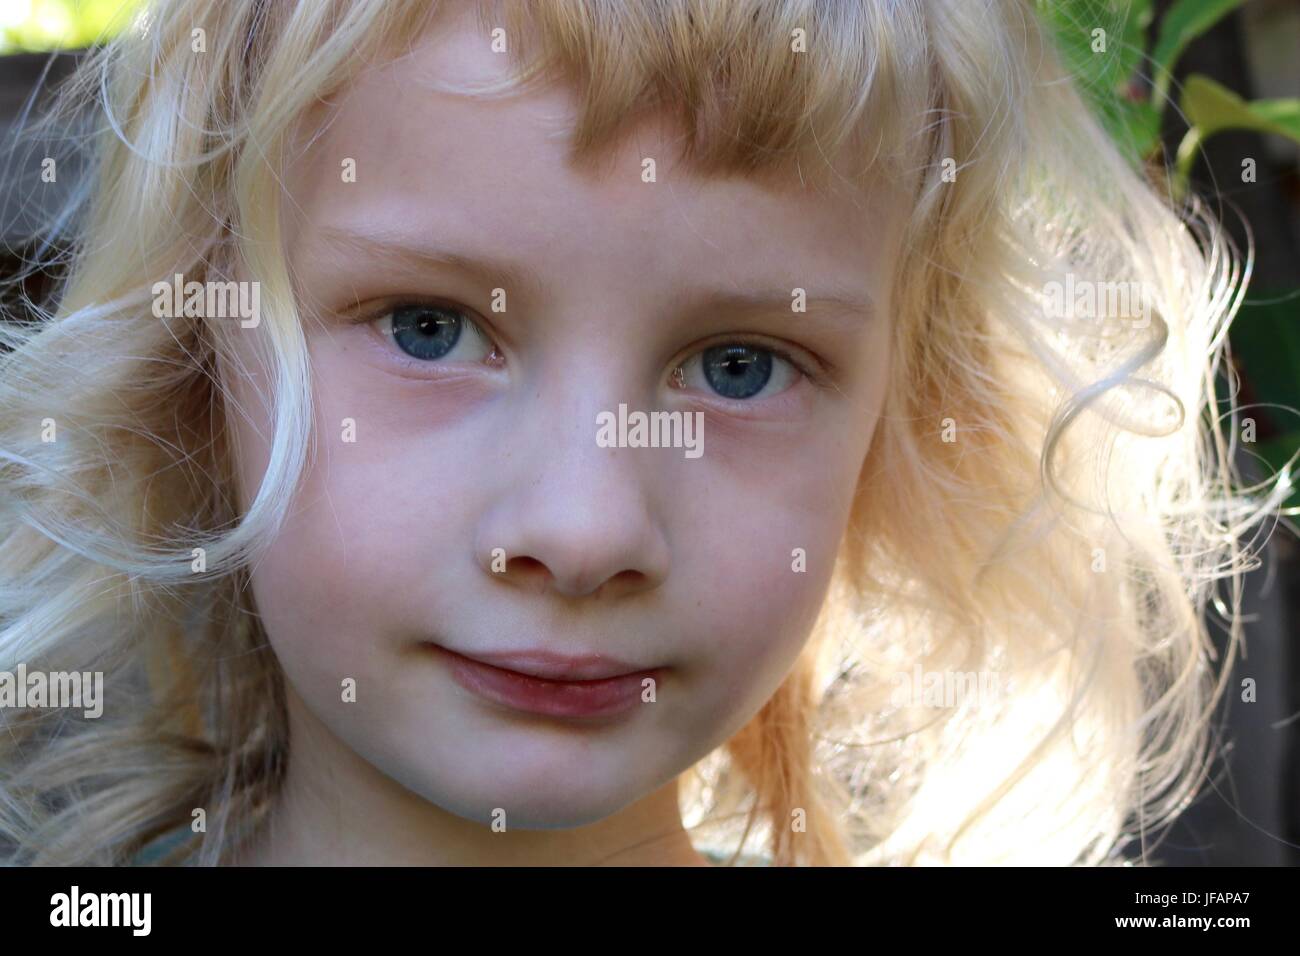 Retrato de cuento como niño con pelo de oro y grandes ojos azules Foto de stock